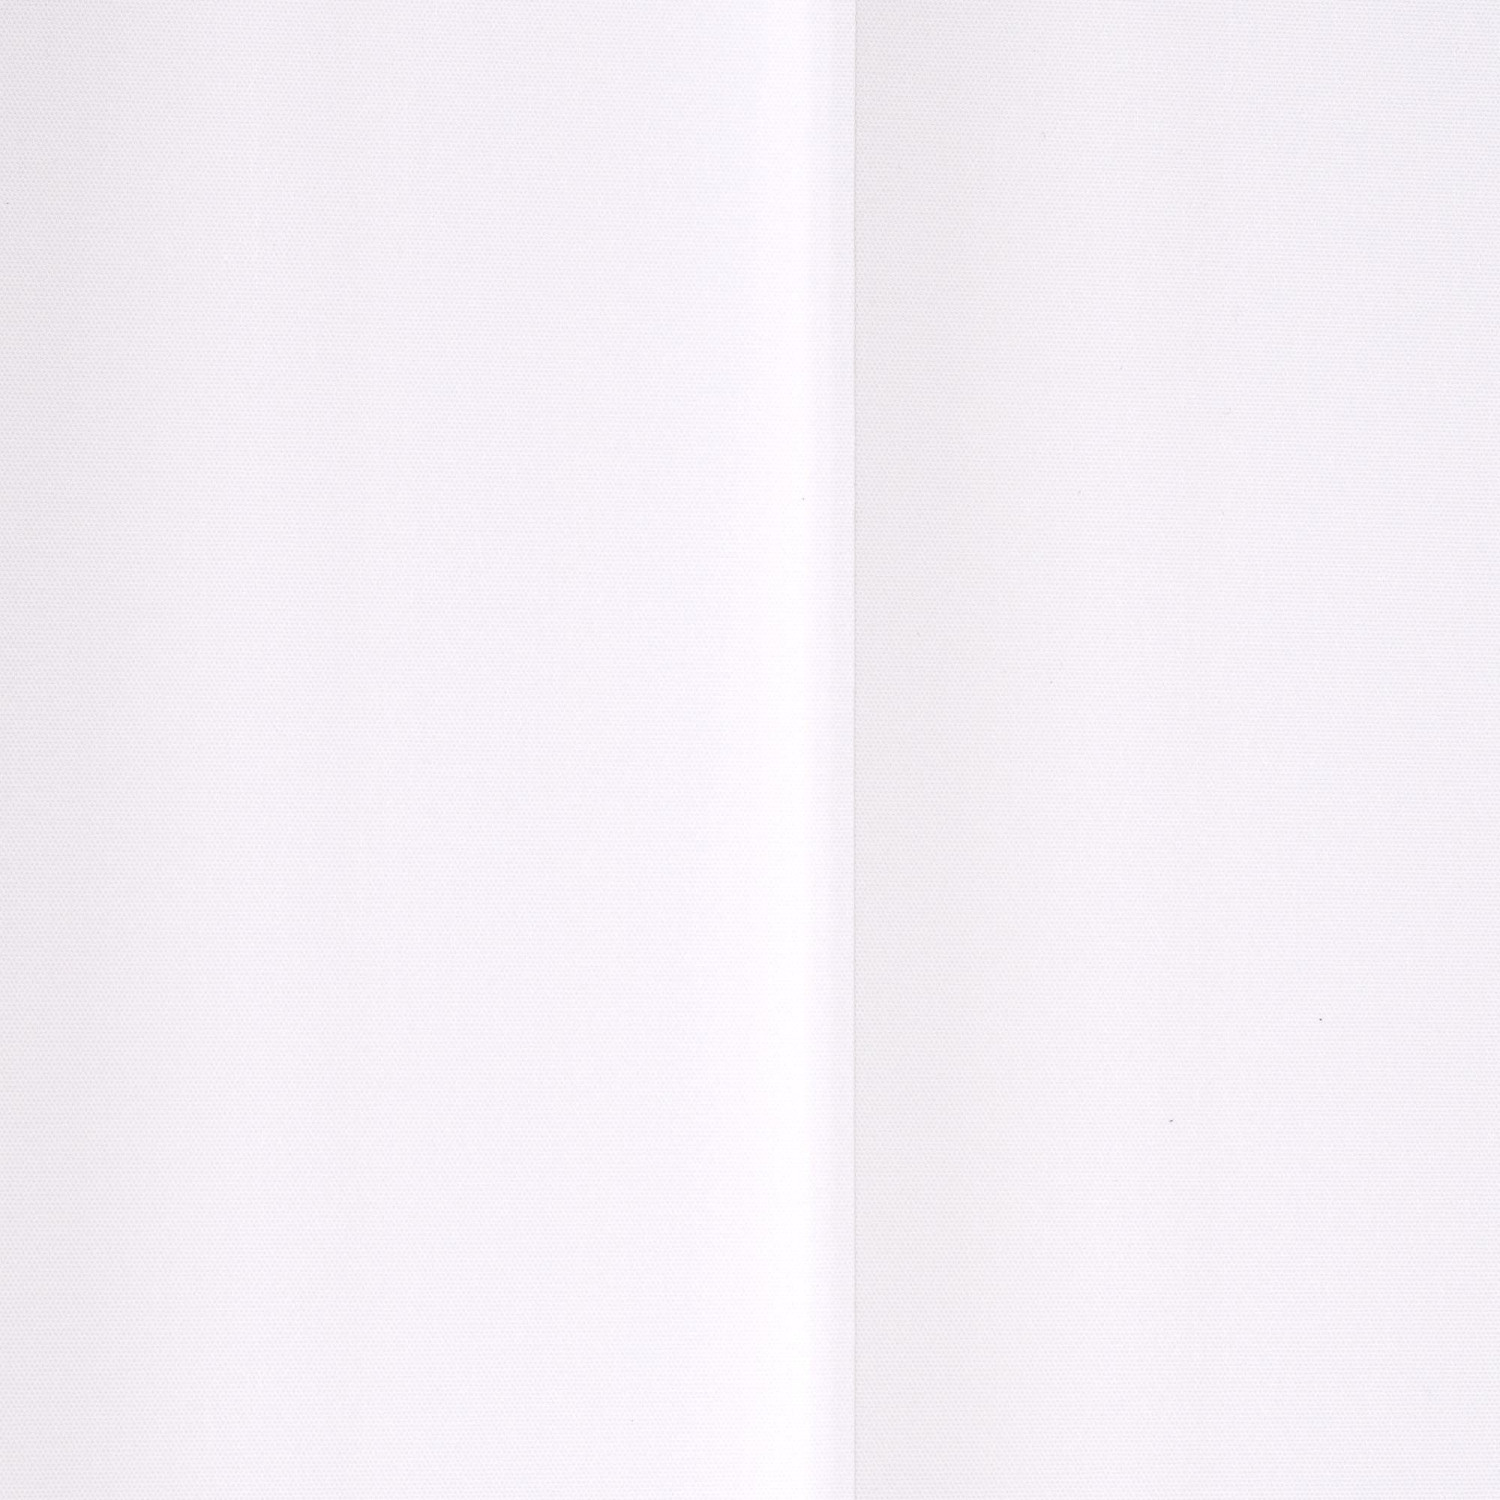 Liedeco Lamellenvorhang-Vertikalanlage 89mm (250 x 150cm) Weiß ab 109,95 €  | Preisvergleich bei